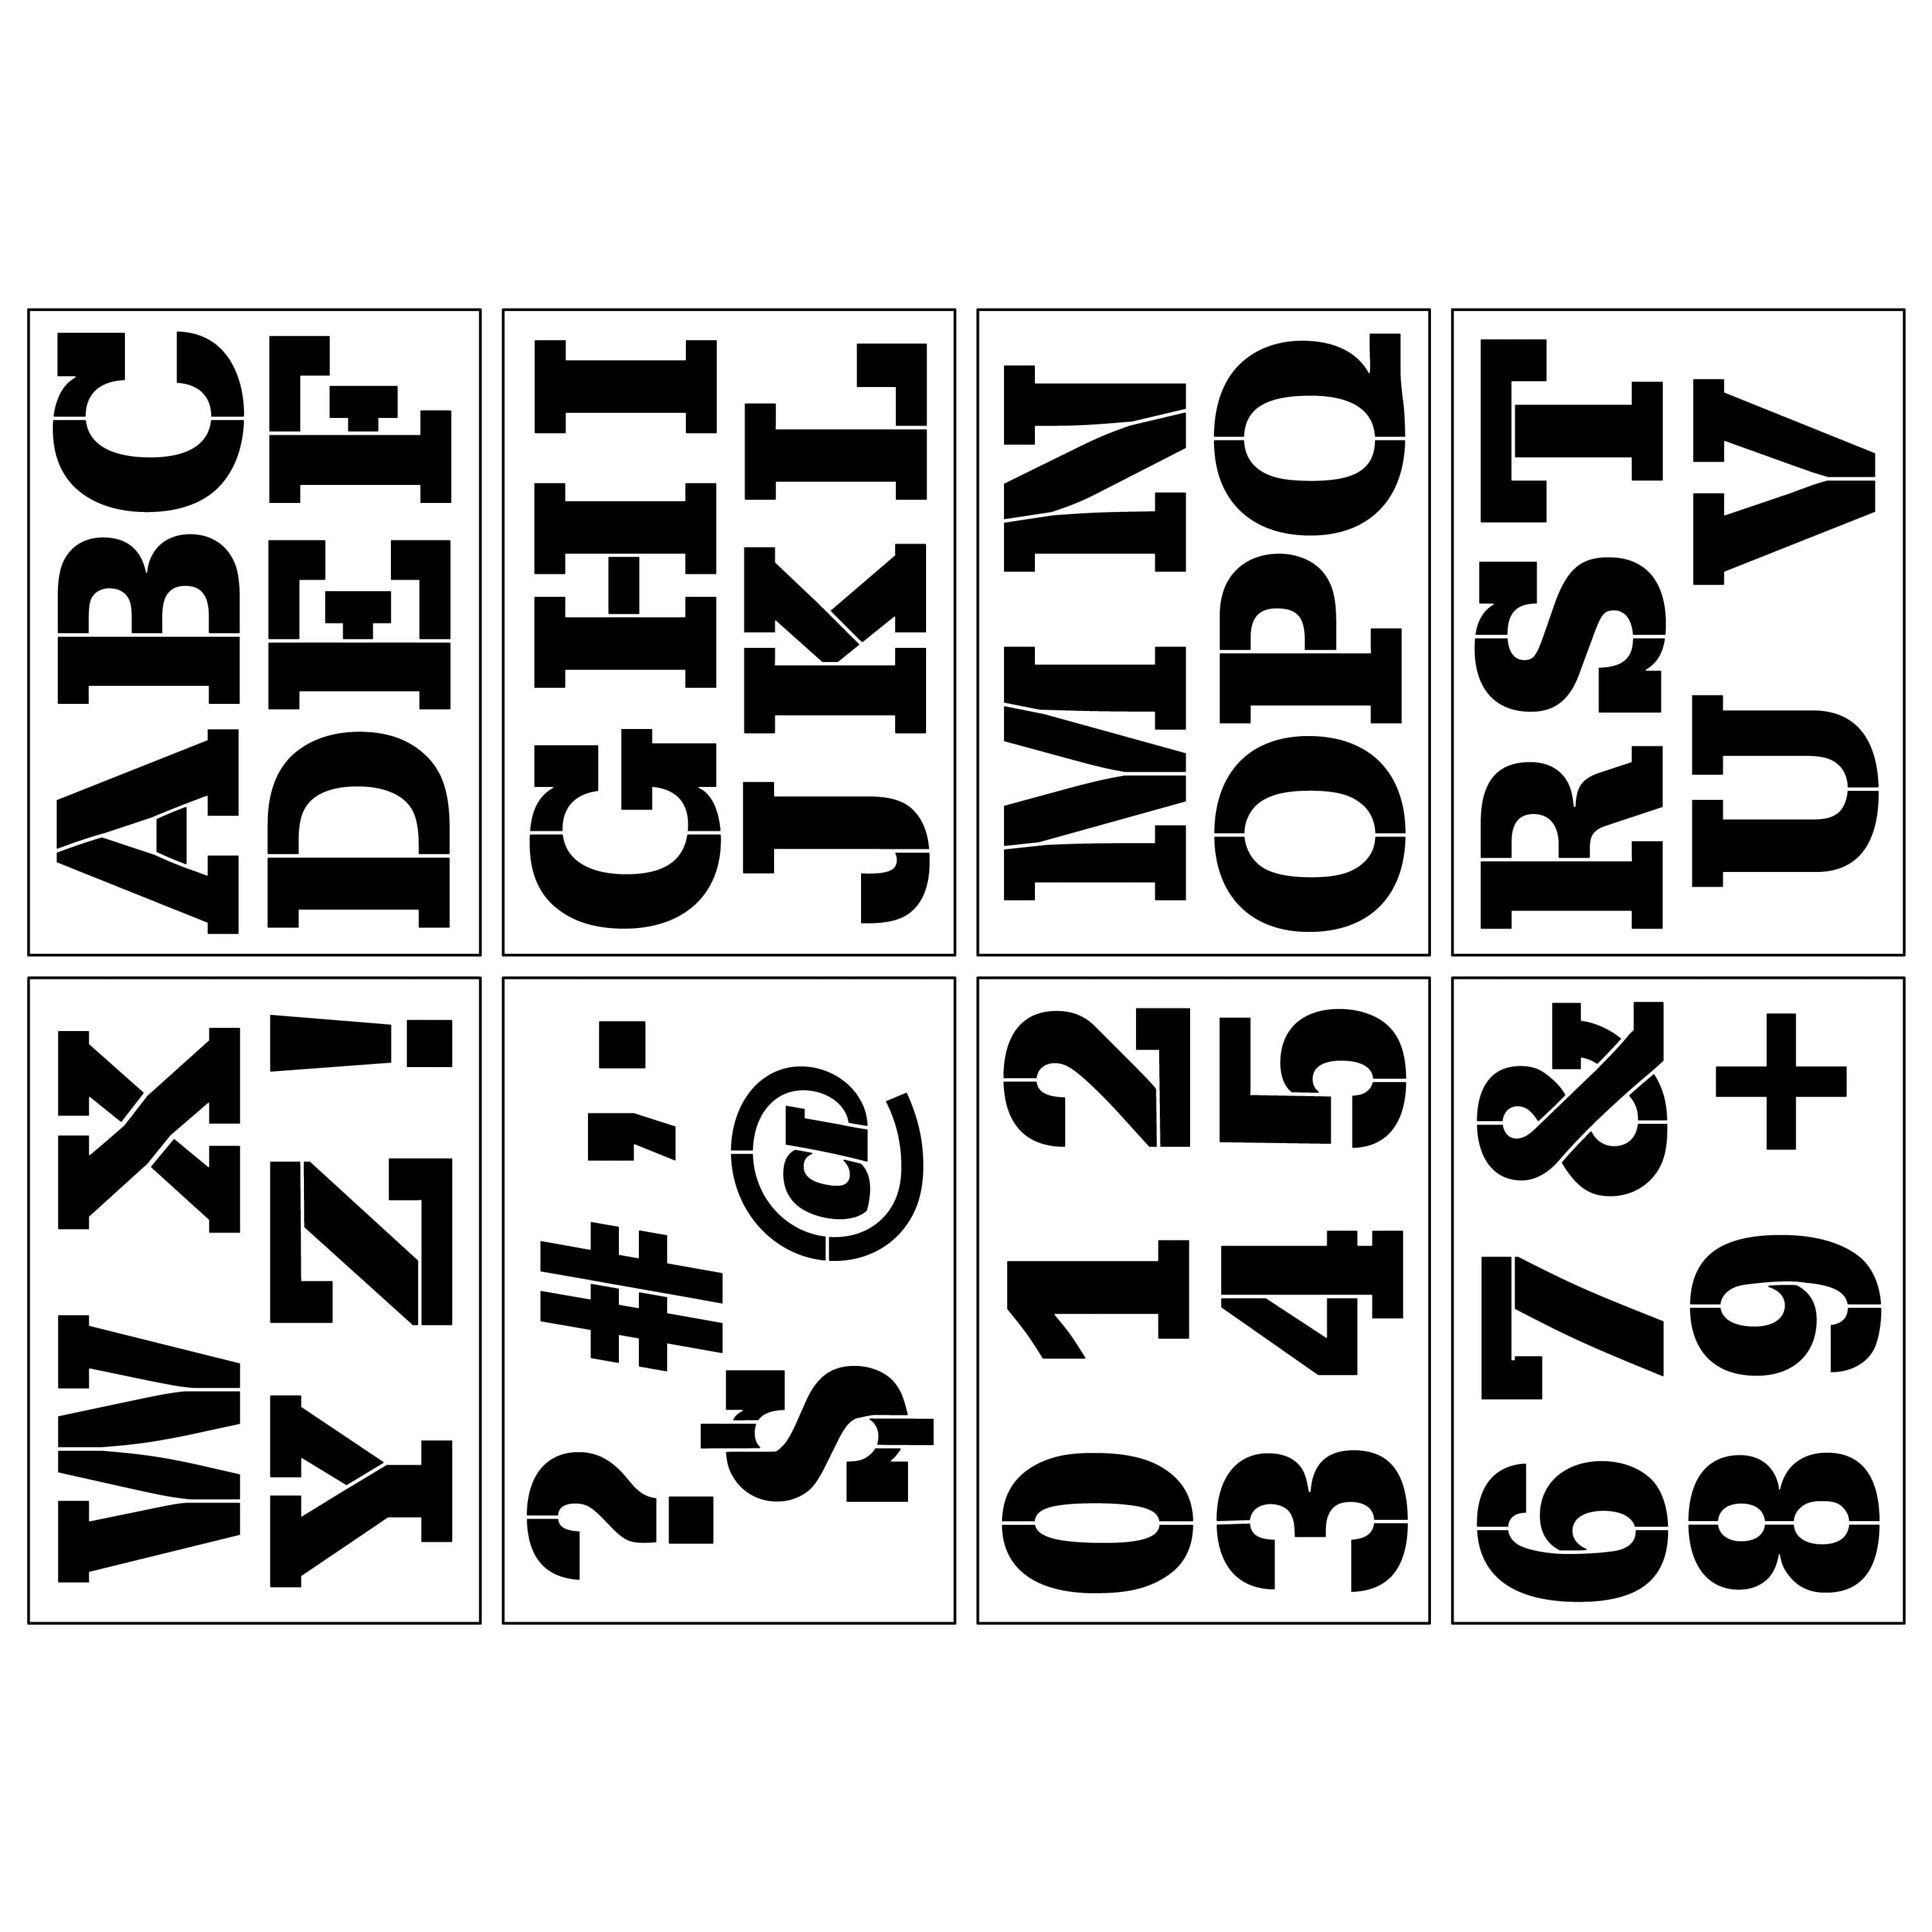 Alphabet Block Caps Stencils, 7 x 10 by Craft Smart®